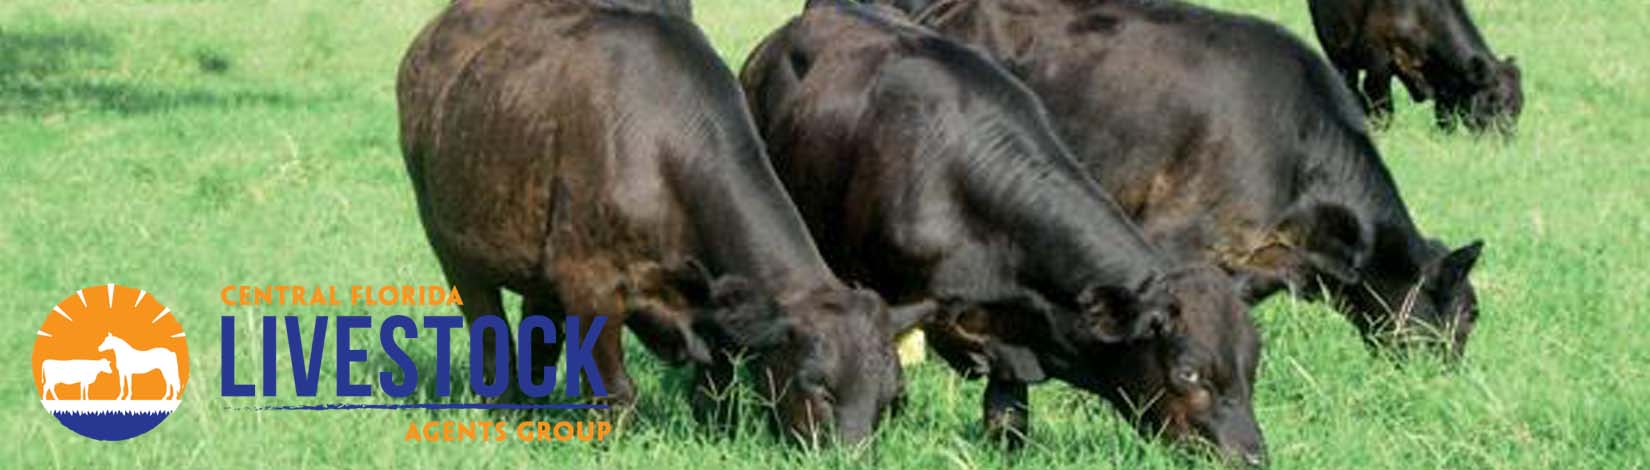 Cattle Header 6